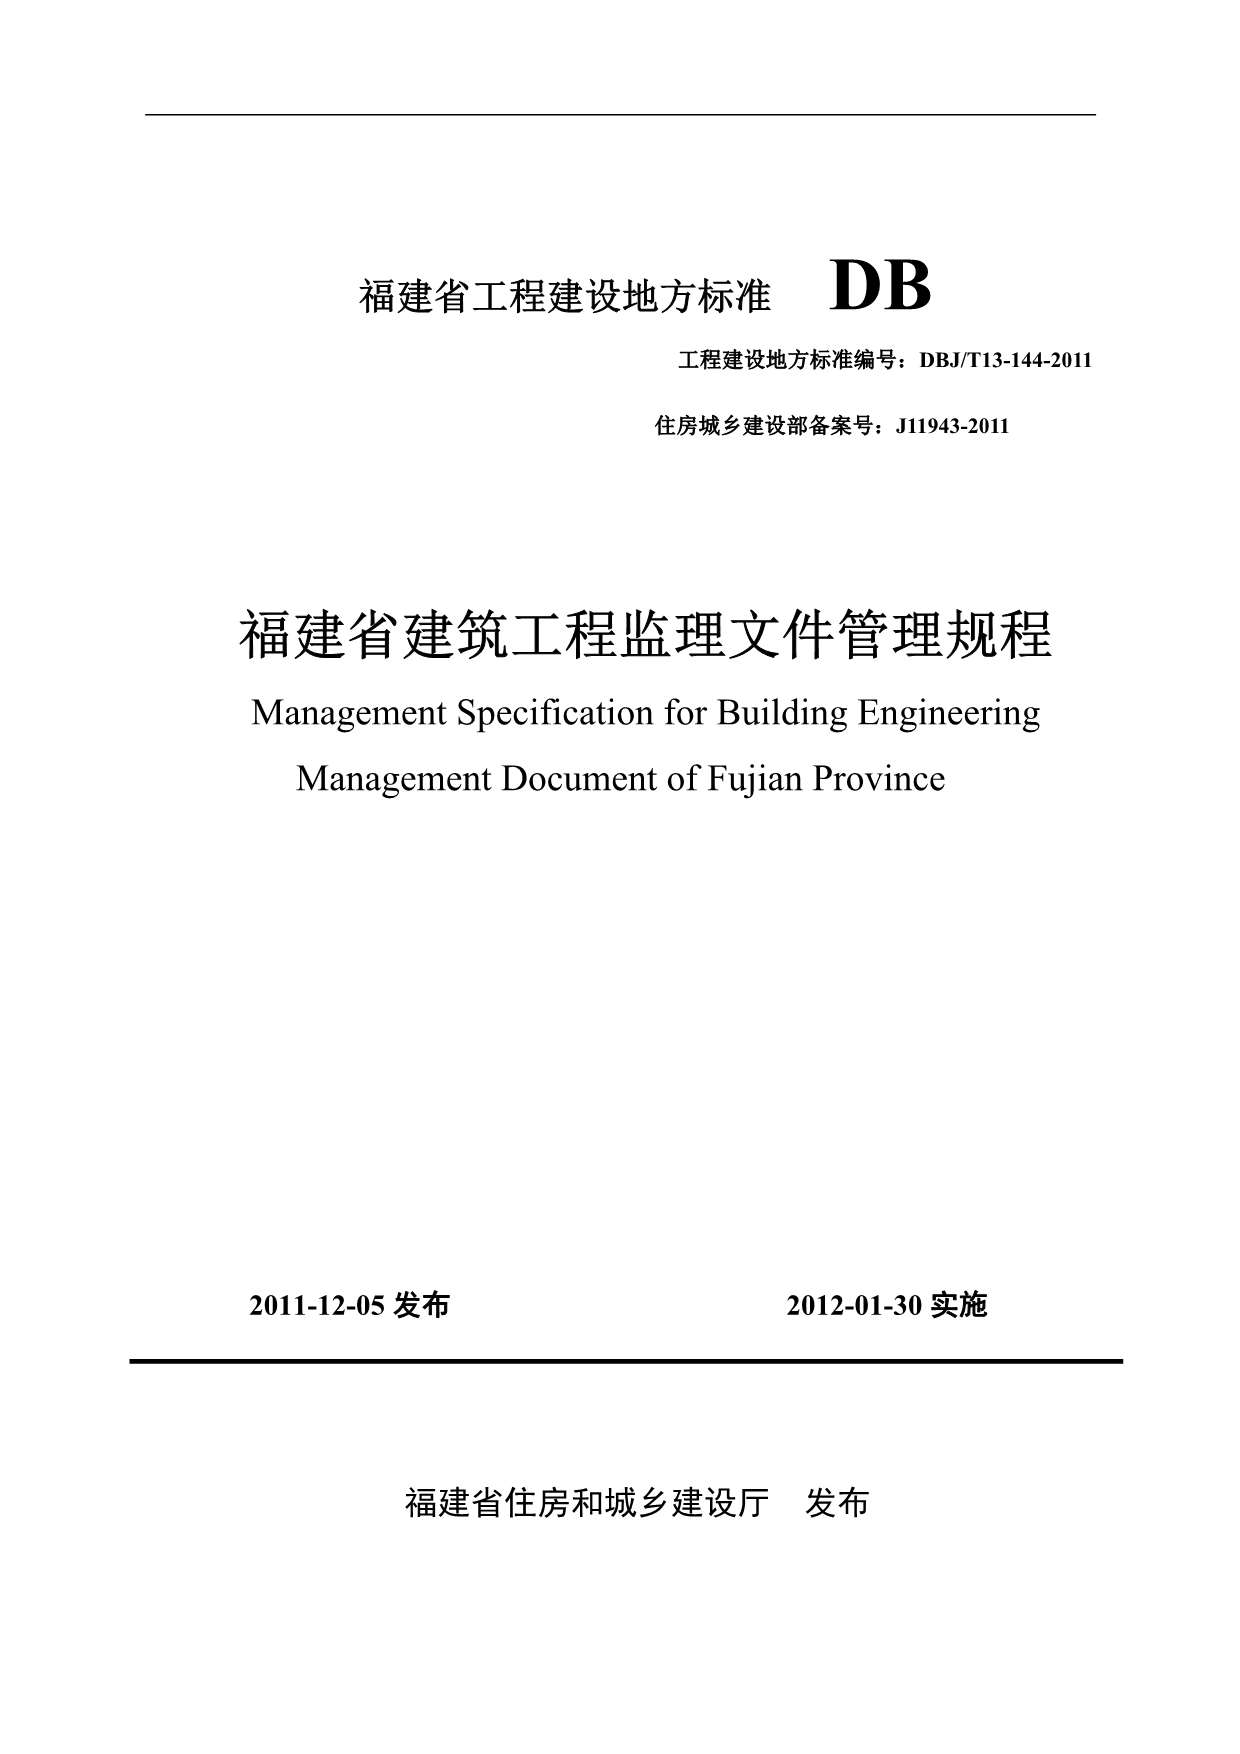 DBJT13-144-2011福建省建筑工程监理文件管理规程